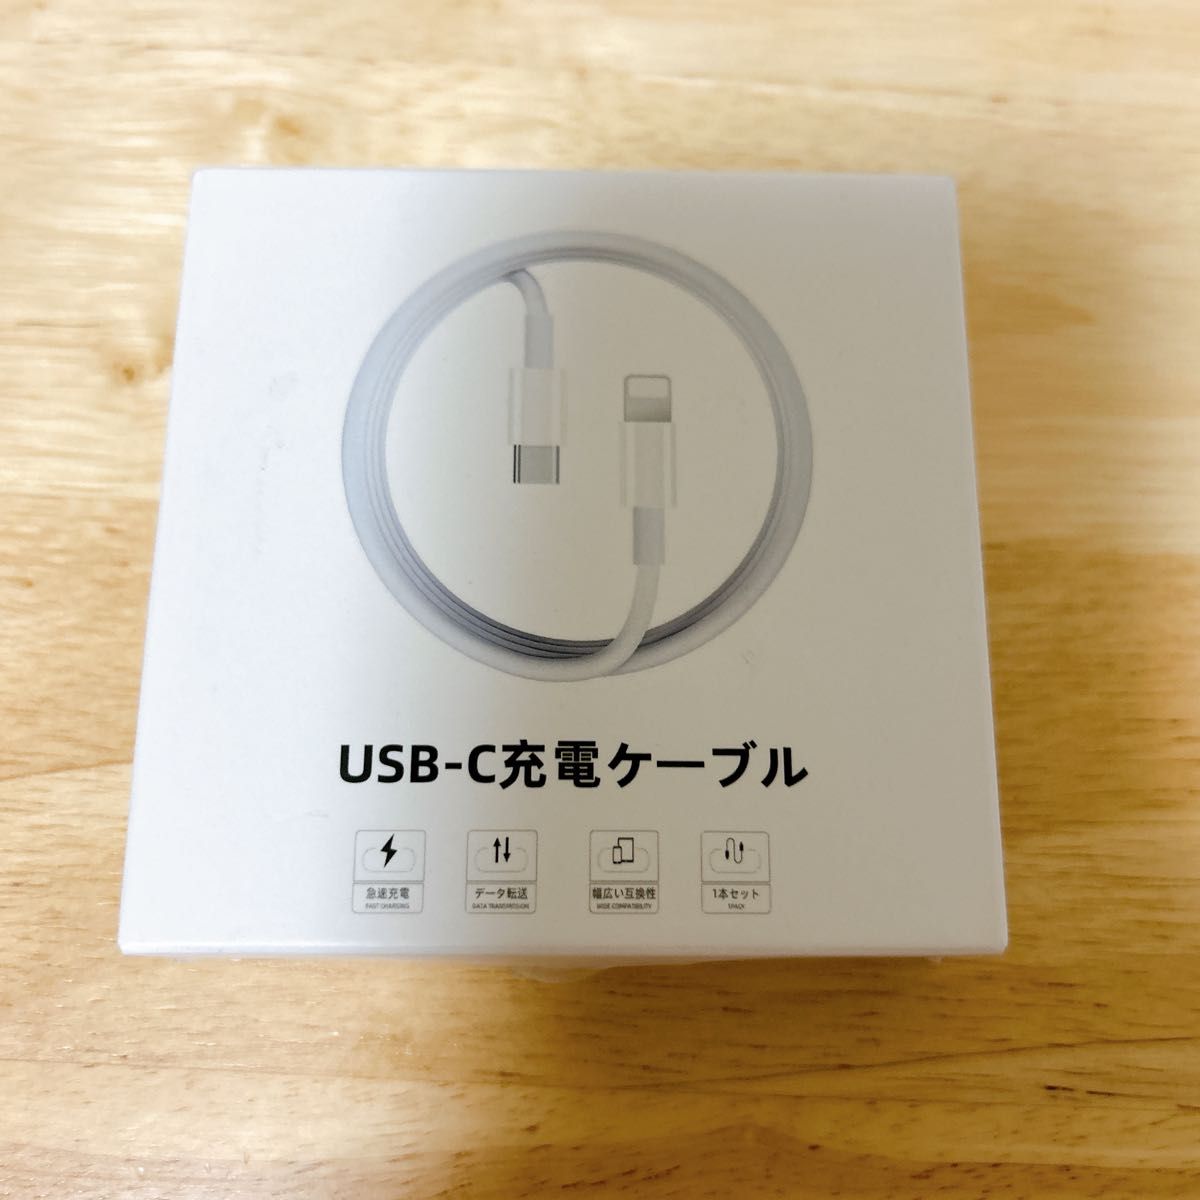 USB-C to Lightningケーブル